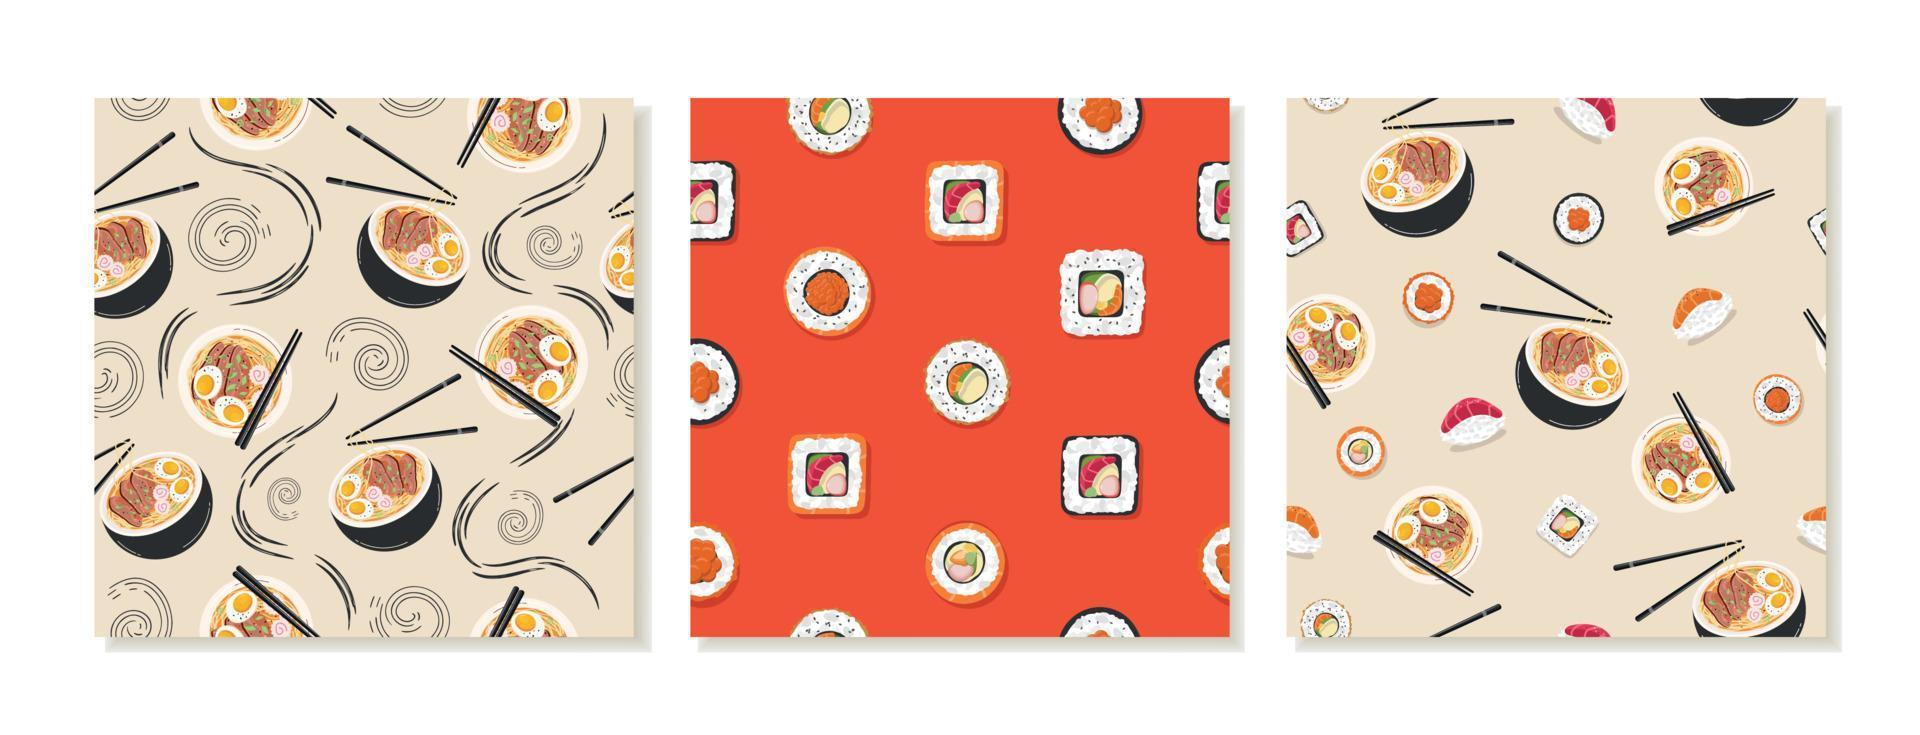 plantillas de fondo cuadradas con patrones de redes sociales impecables para restaurantes japoneses asiáticos. comida asiática, panecillos, ramen. vector